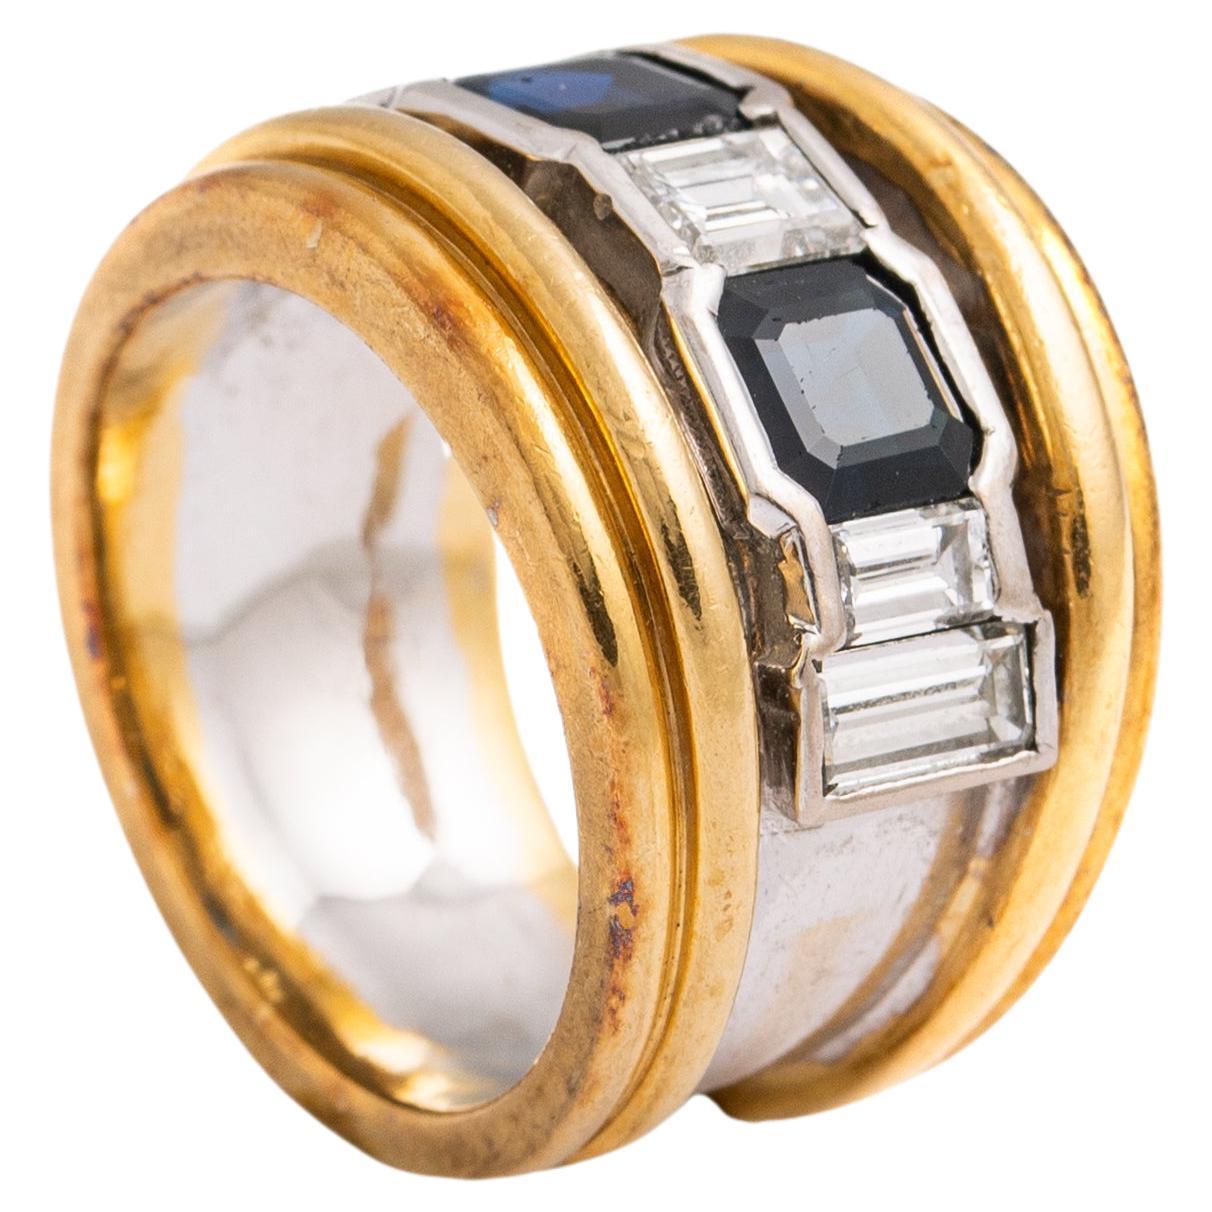 Vasari Saphir Diamant Gold 18K Ring.
Signiert Vasari.
Kann auf Anfrage poliert werden.

Gewicht des Saphirs: ungefähr 0,60-0,80 Karat pro Stück.
Gesamtgewicht der Diamanten: ca. 1,00 Karat geschätzt.
Gesamtgewicht: 13,84 Gramm.
Größe: 52 / 6 US.